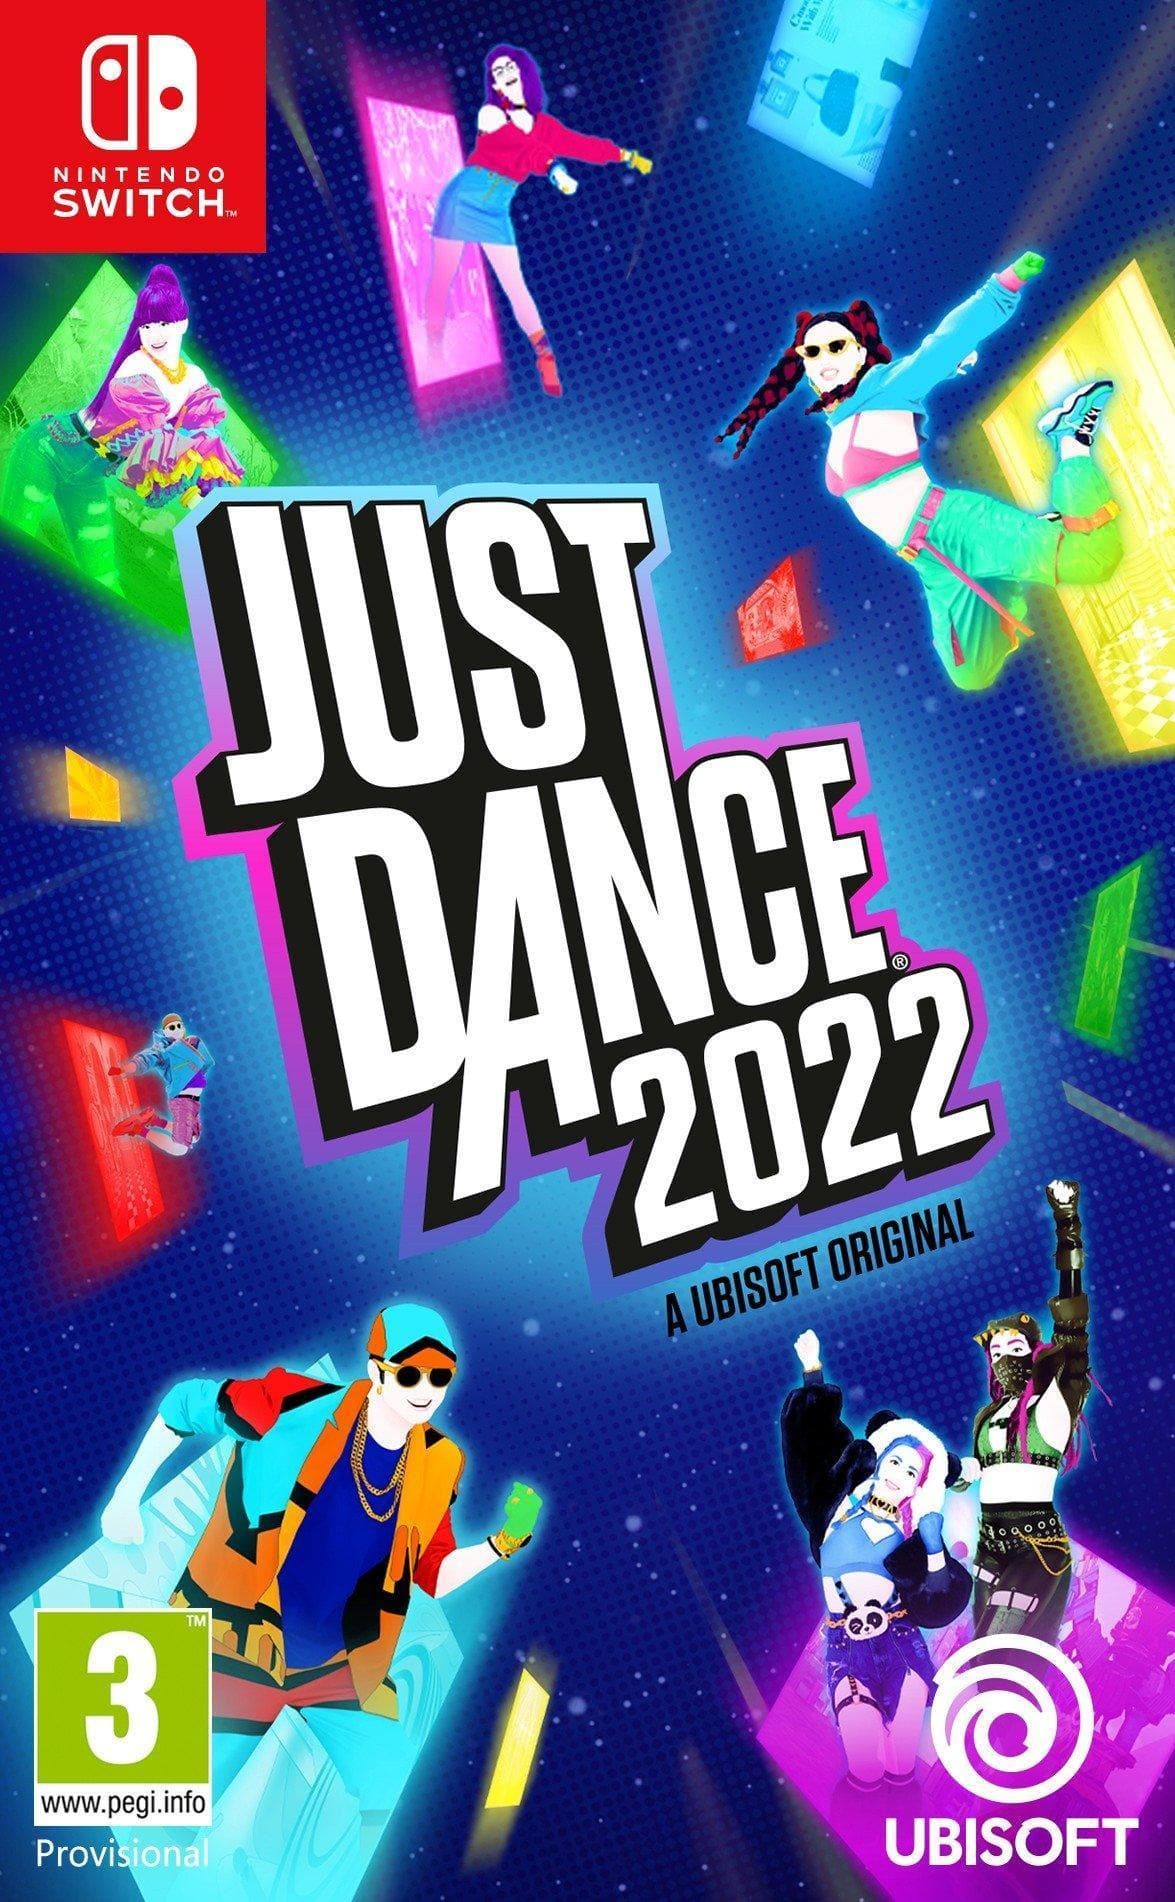 Just dance 2022 - Nintendo Switch - EXON - גיימינג ותוכנות - משחקים ותוכנות למחשב ולאקס בוקס!